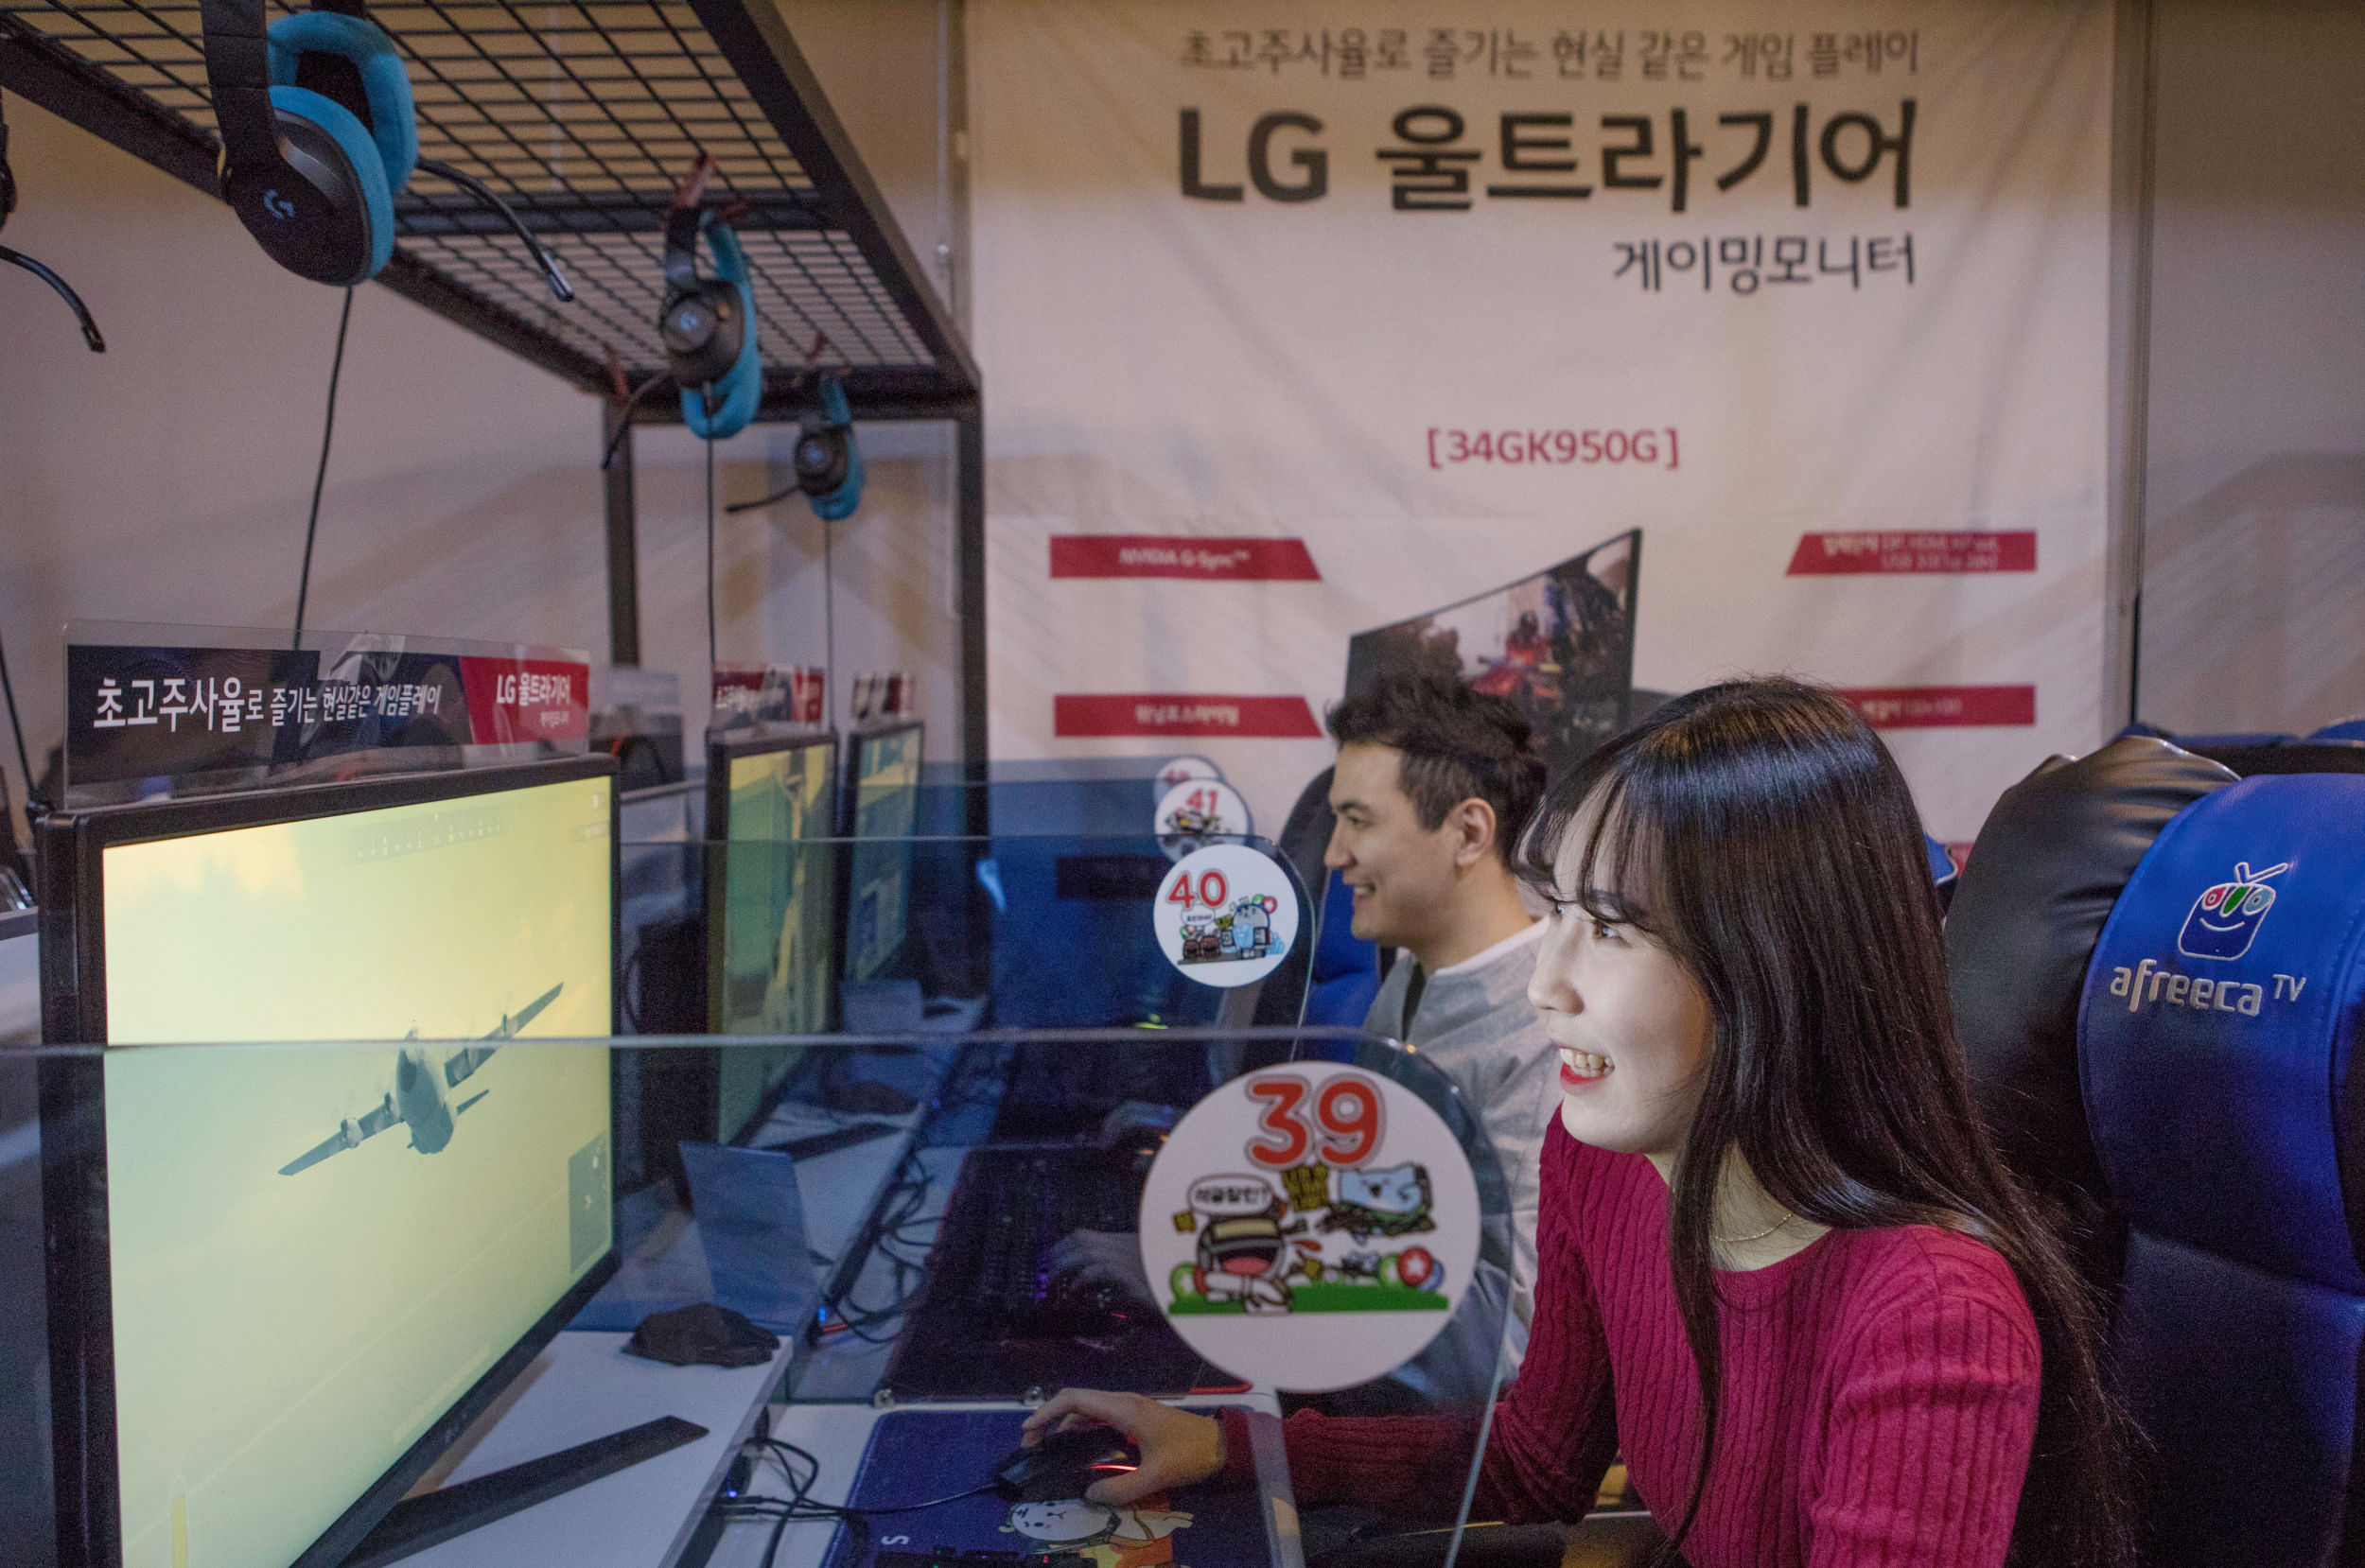  지난 주말 광주광역시 소재 '아프리카TV' PC방에서 진행한 'LG 울트라기어' 게이밍모니터 체험 이벤트 참가자들이 게임을 즐기고 있다.